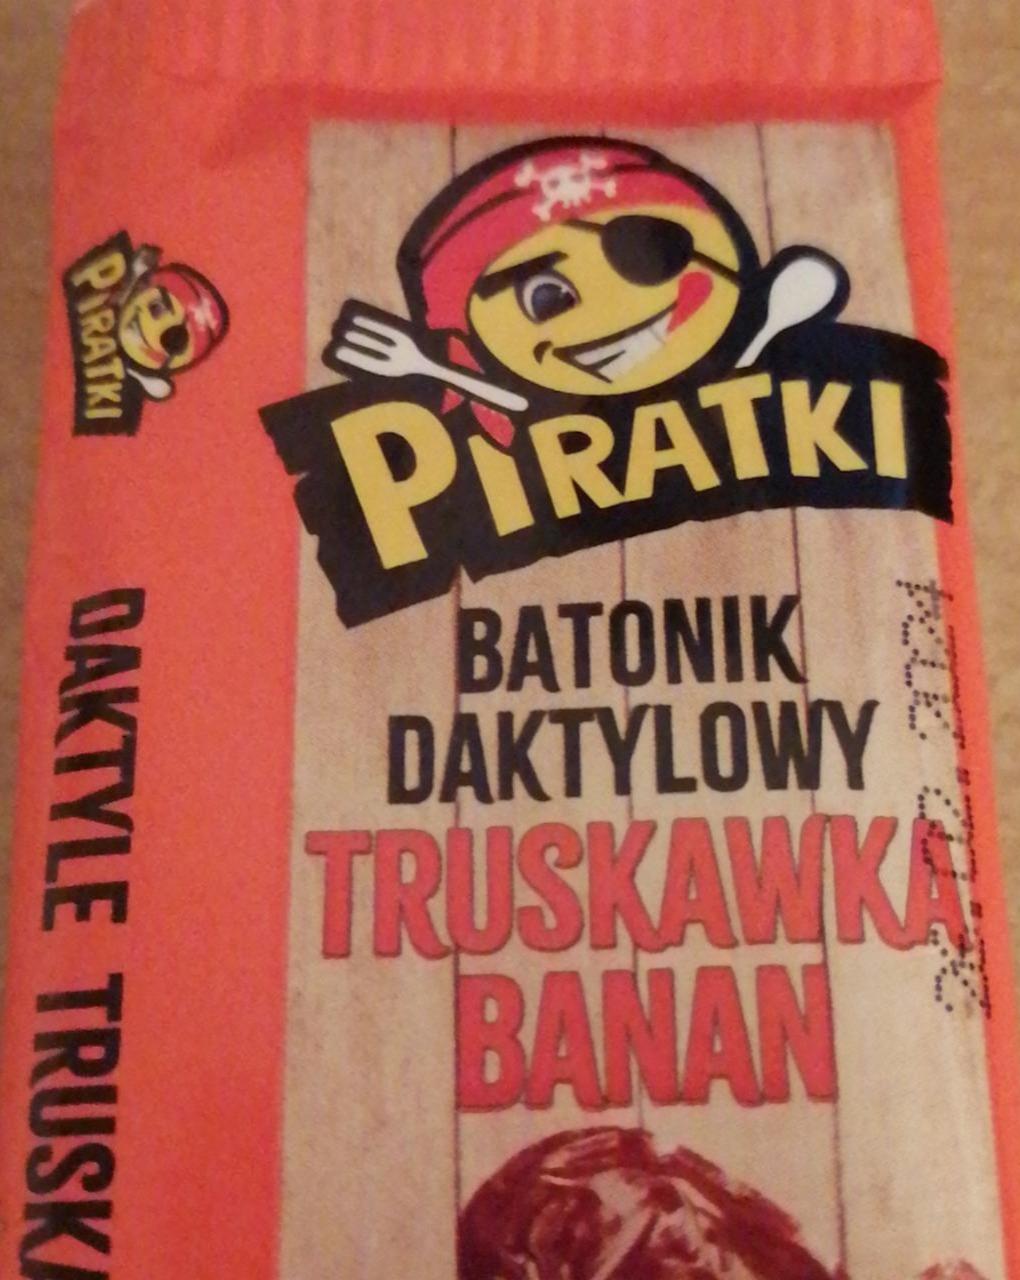 Zdjęcia - Batonik daktylowy Truskawka banan Piratki